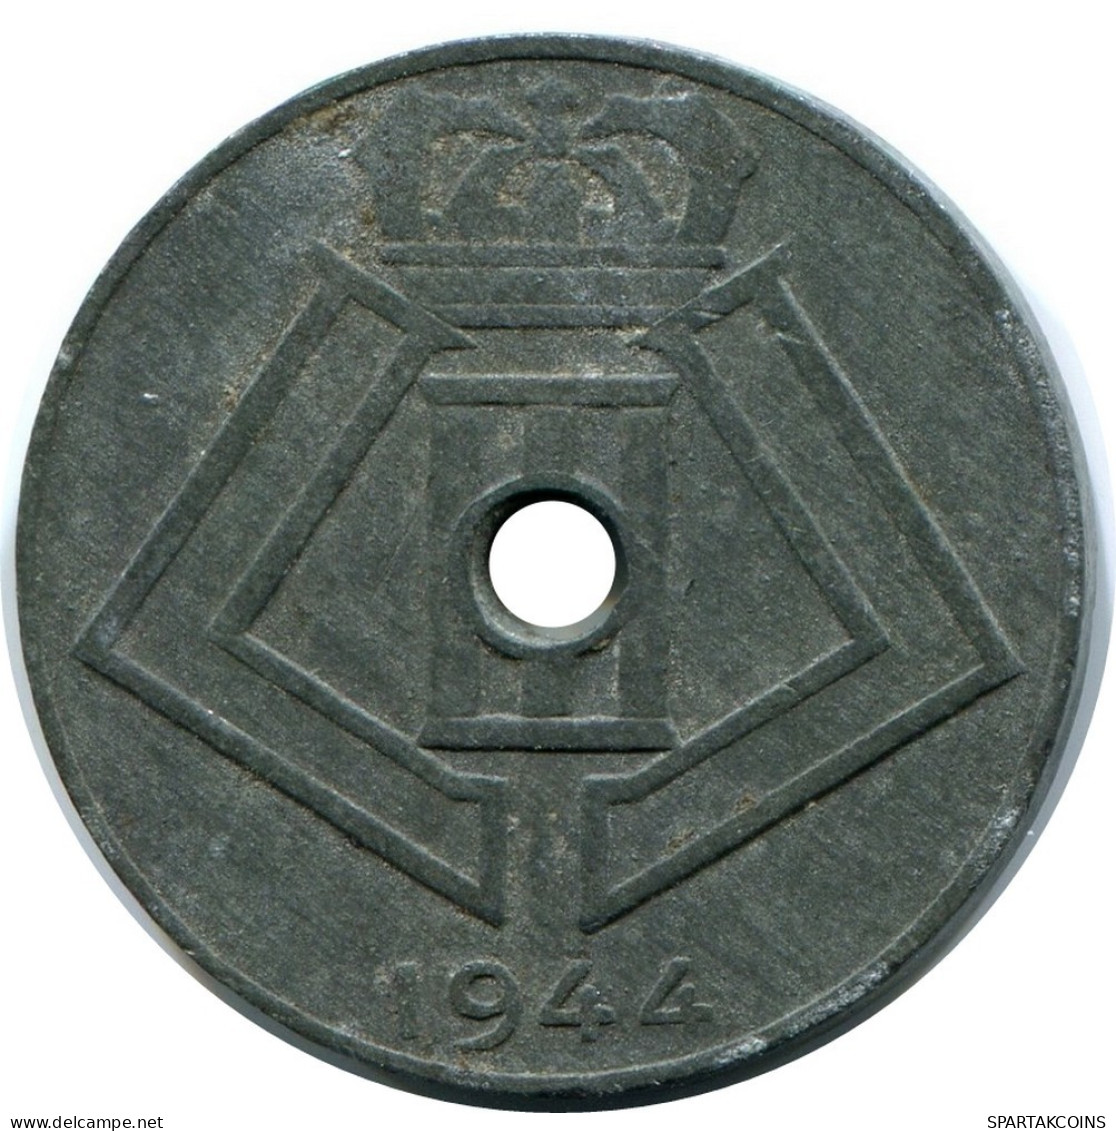 10 CENTIMES 1944 BELGIQUE BELGIUM Pièce BELGIE-BELGIQUE #AX366.F.A - 10 Centimes & 25 Centimes